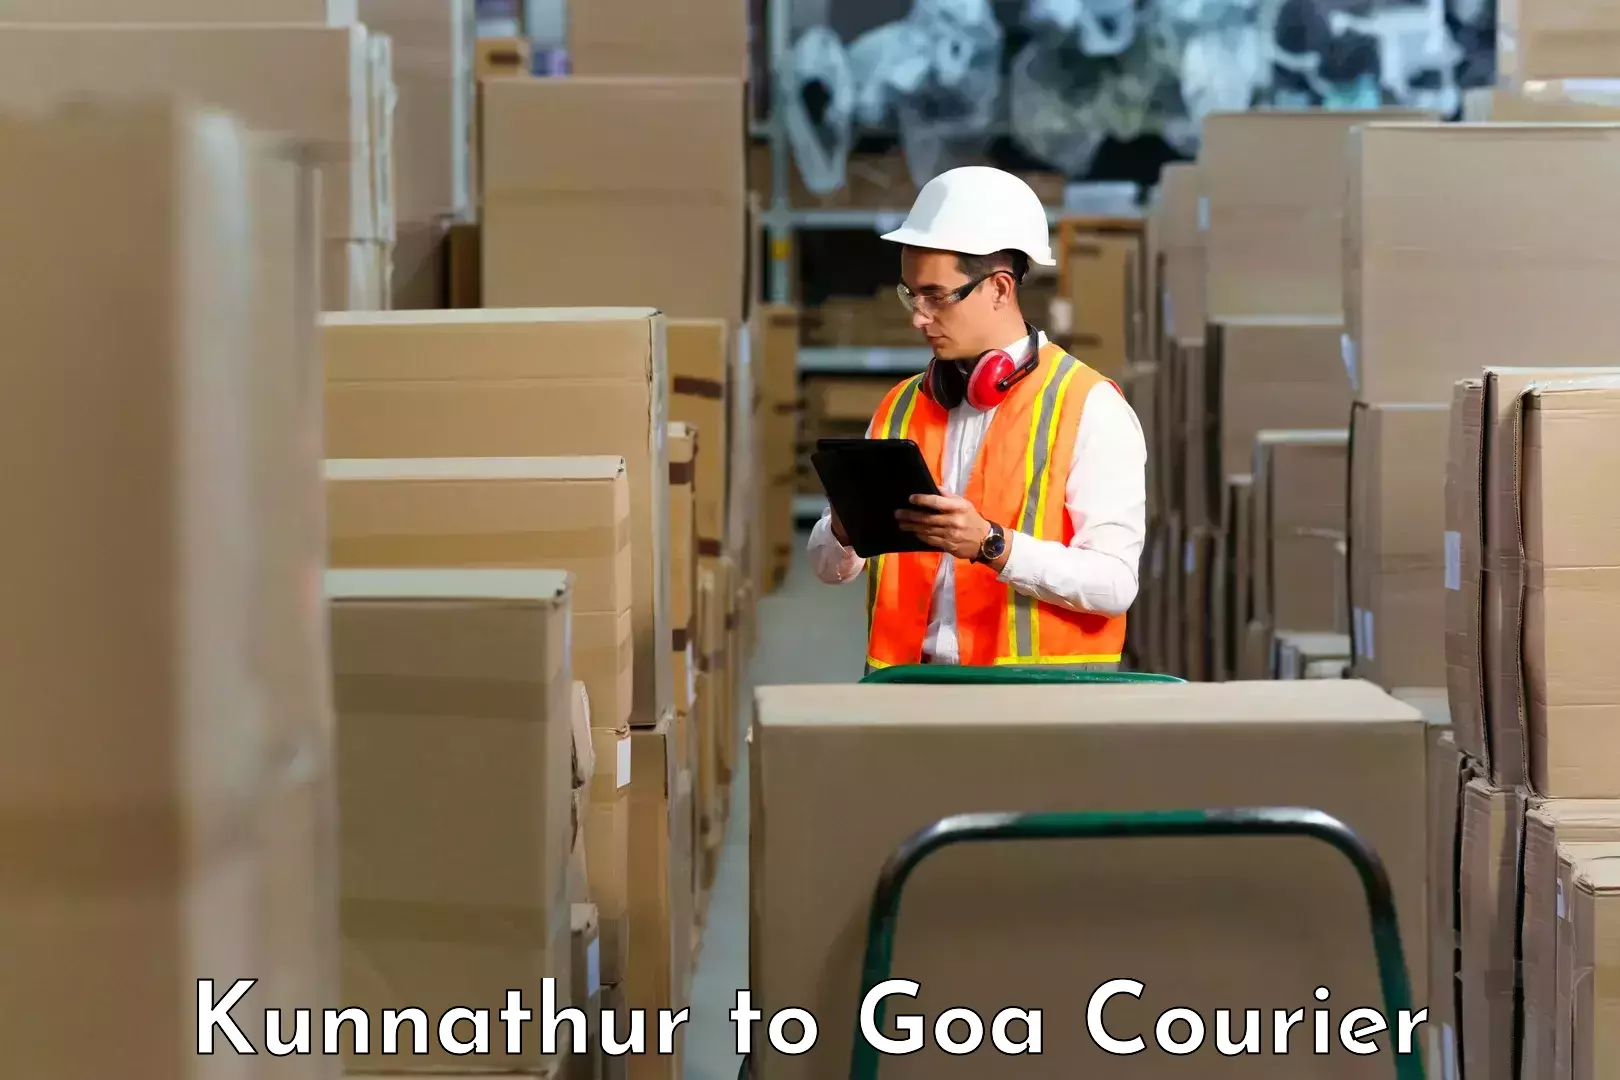 Comprehensive shipping network Kunnathur to Panaji